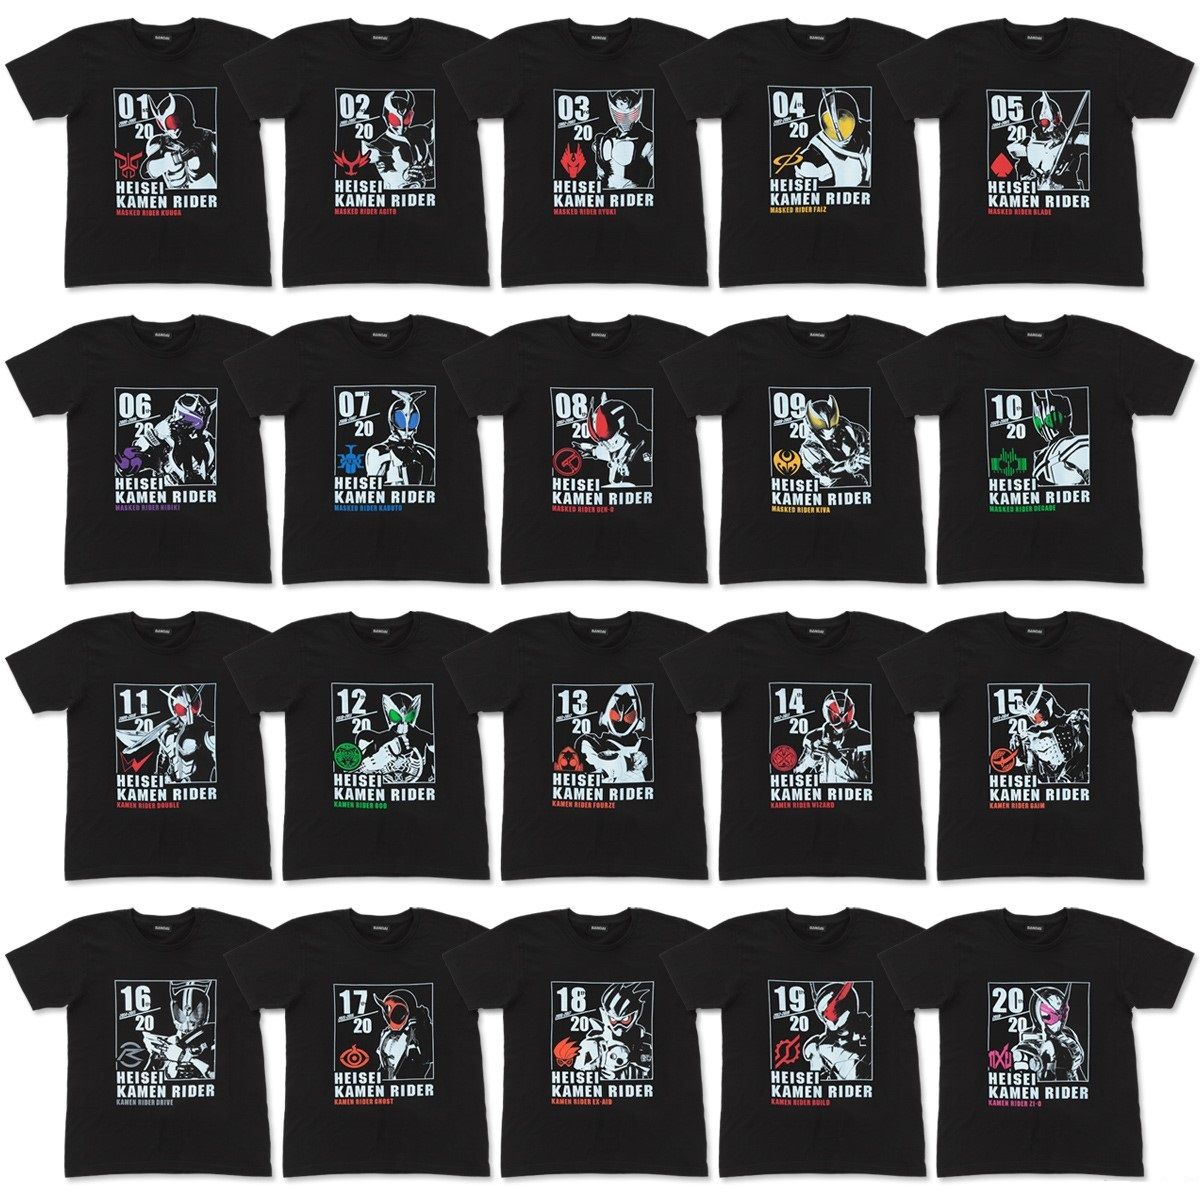 HEISEI RIDER 20th anniversary MOVIE T-shirts